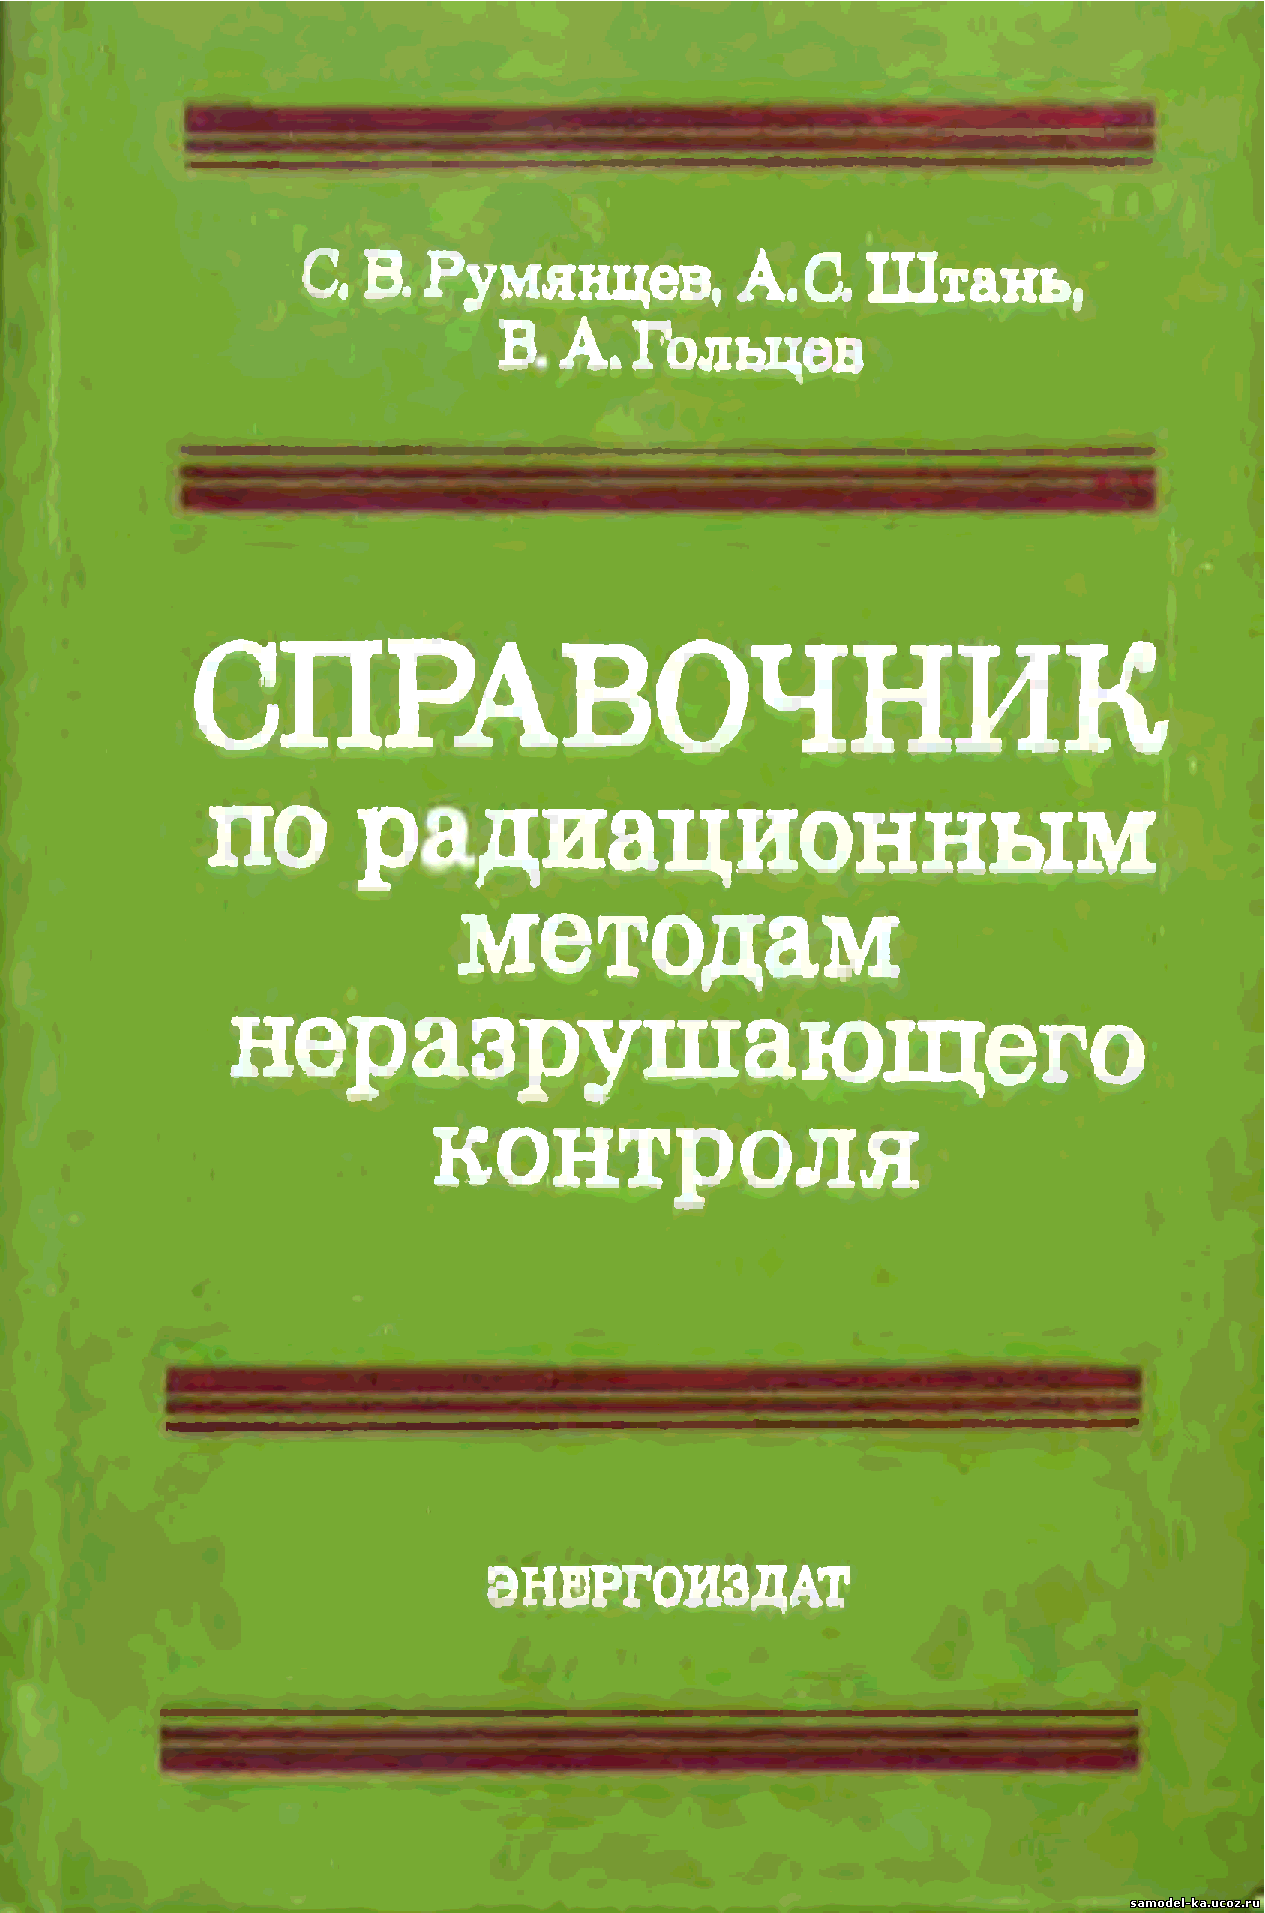 Справочник по радиационным методам неразрушающего контроля (1982) С.В.Румянцев 